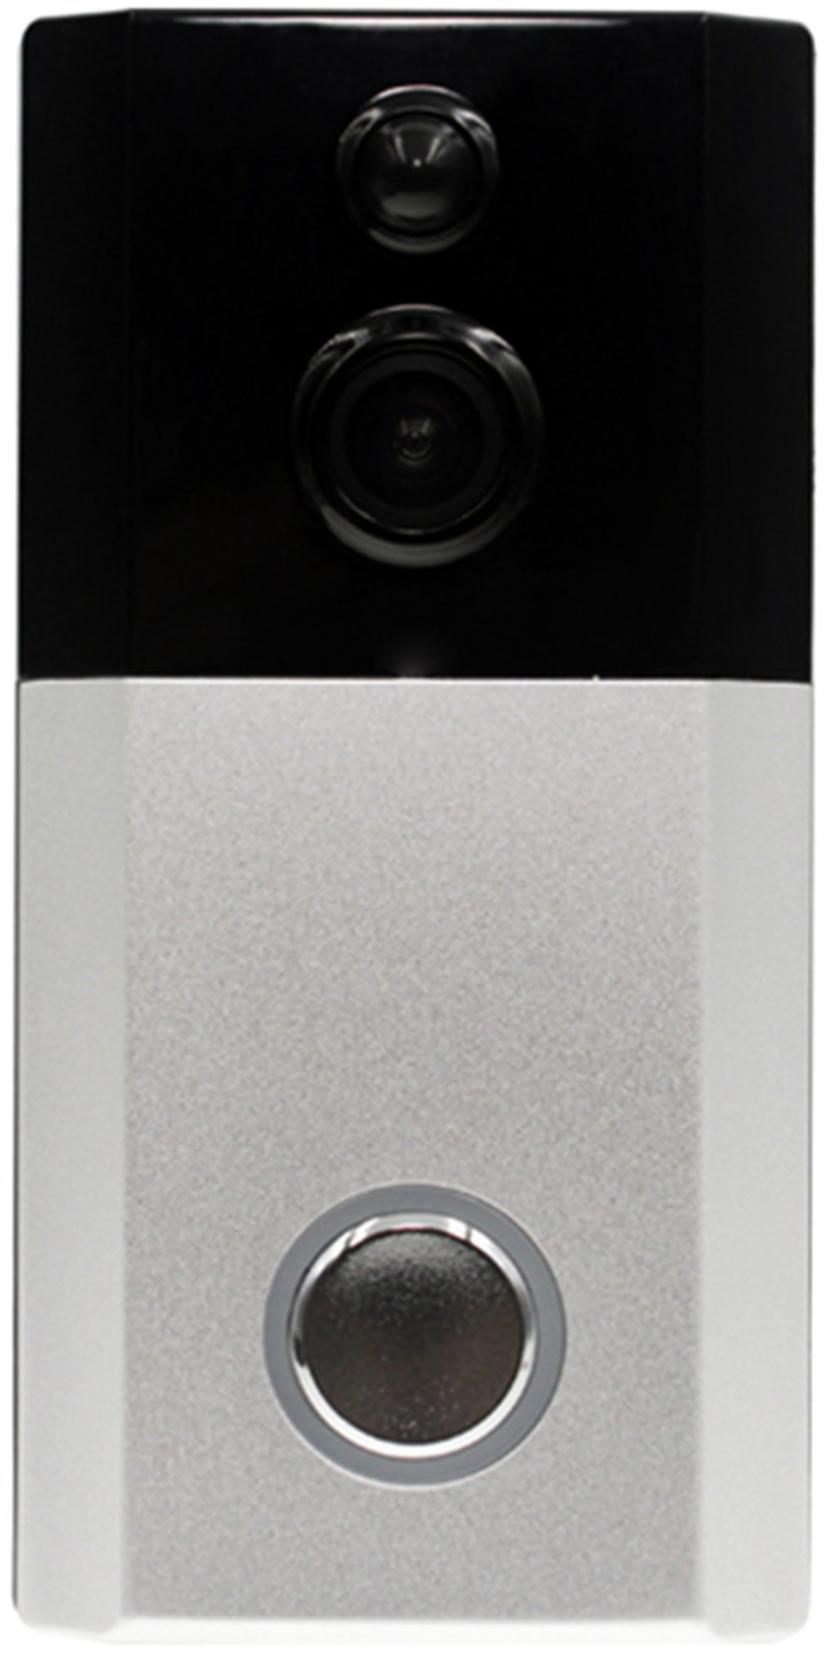 Prokord Smart Home WiFi Door Camera